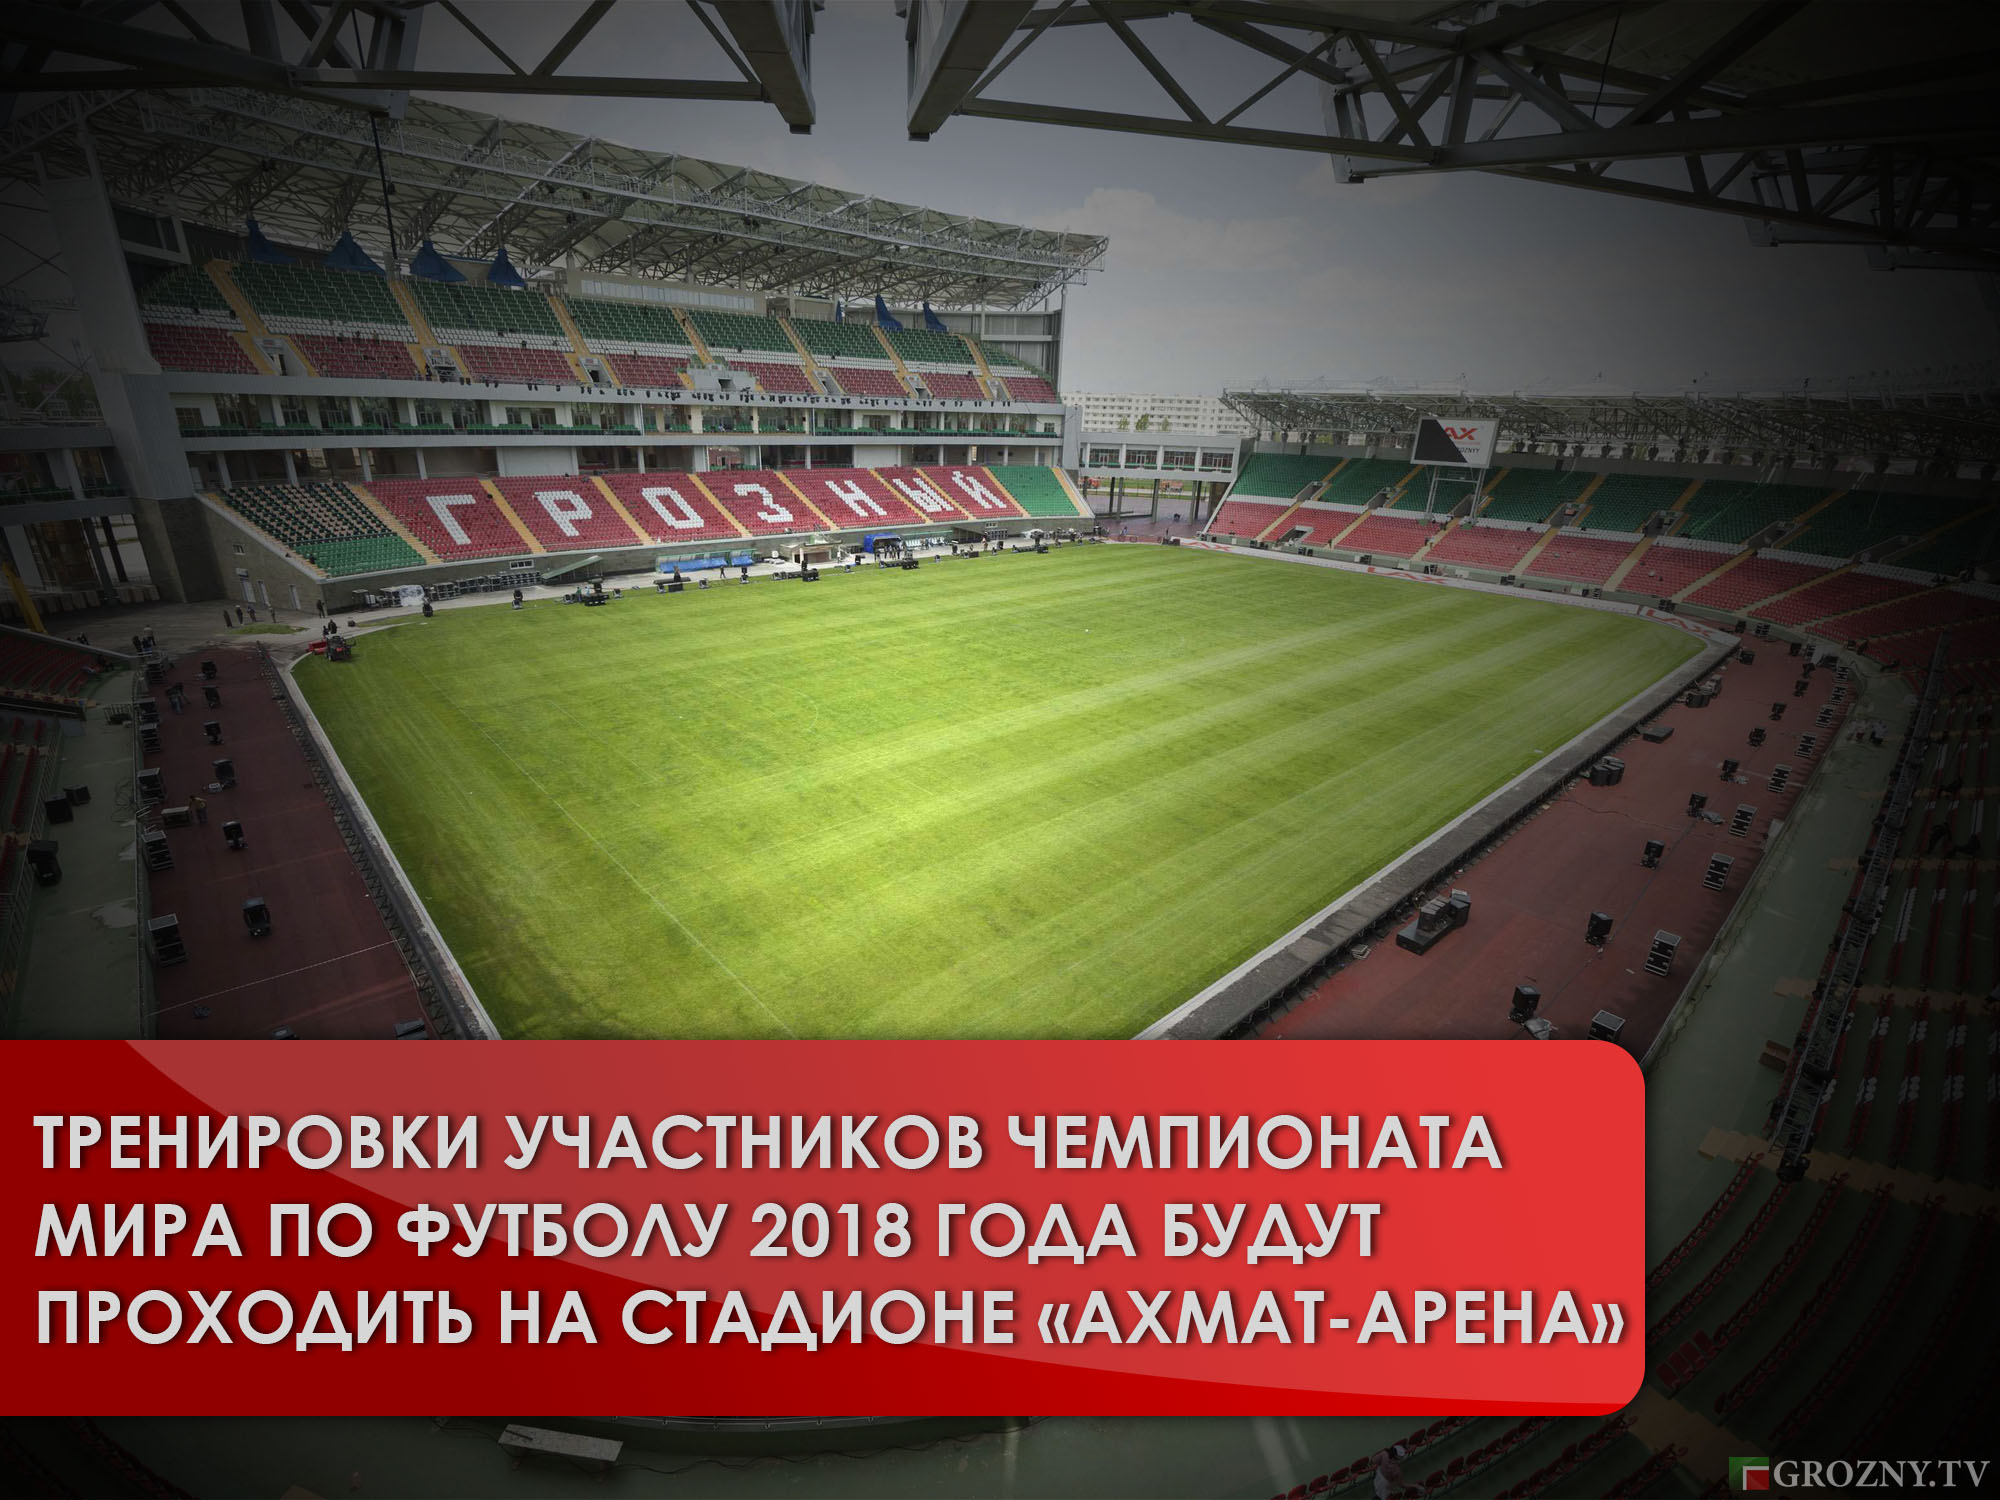 Тренировки участников чемпионата мира по футболу 2018 года будут проходить на стадионе «Ахмат-Арена» 